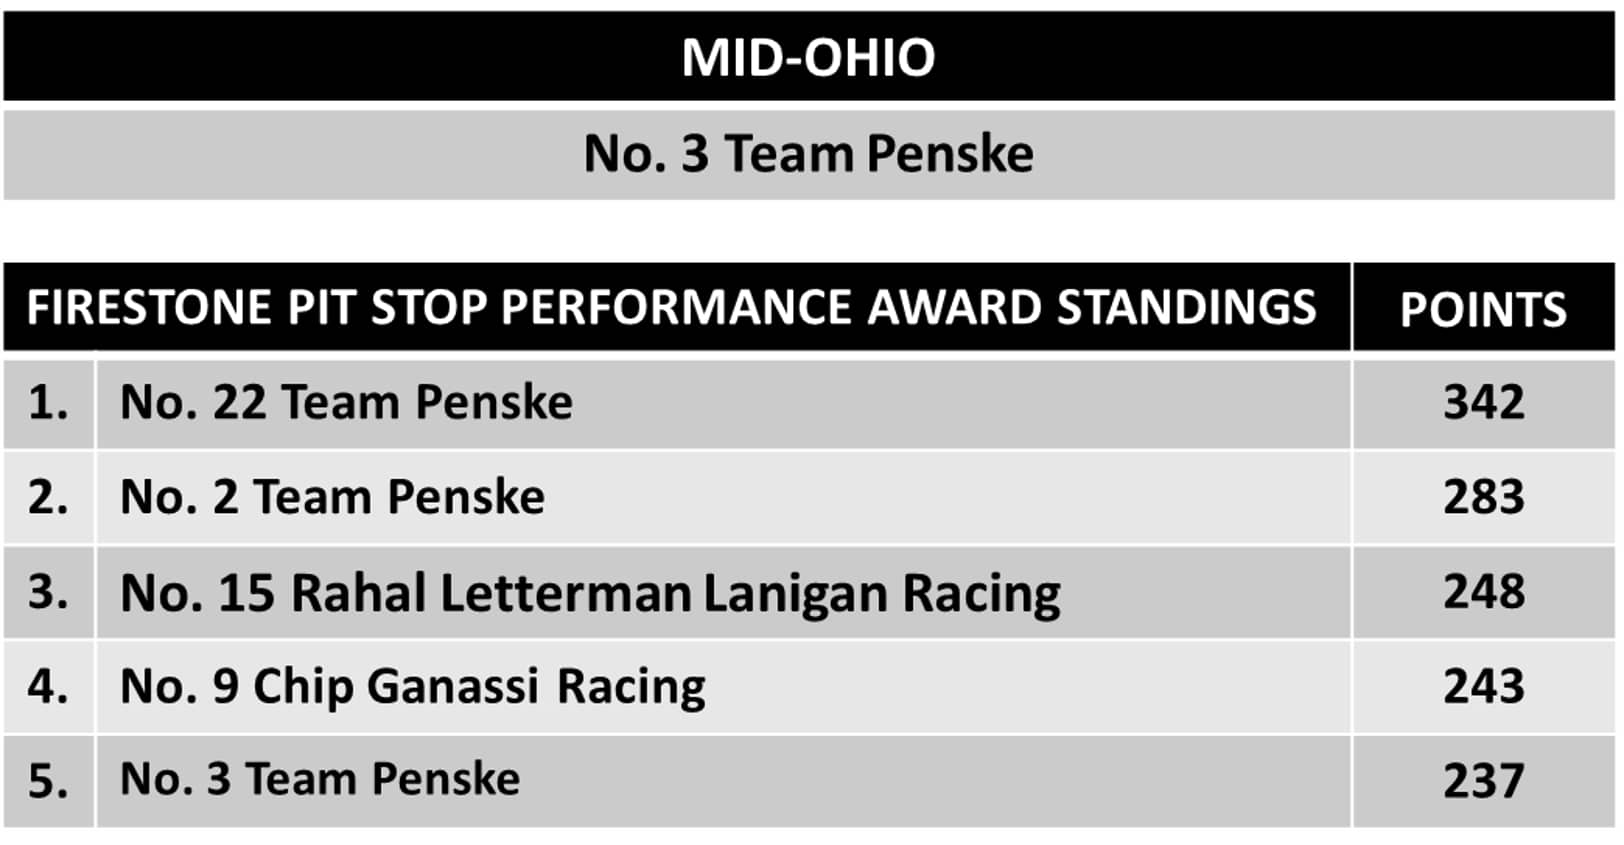 Nashville Performance Standings